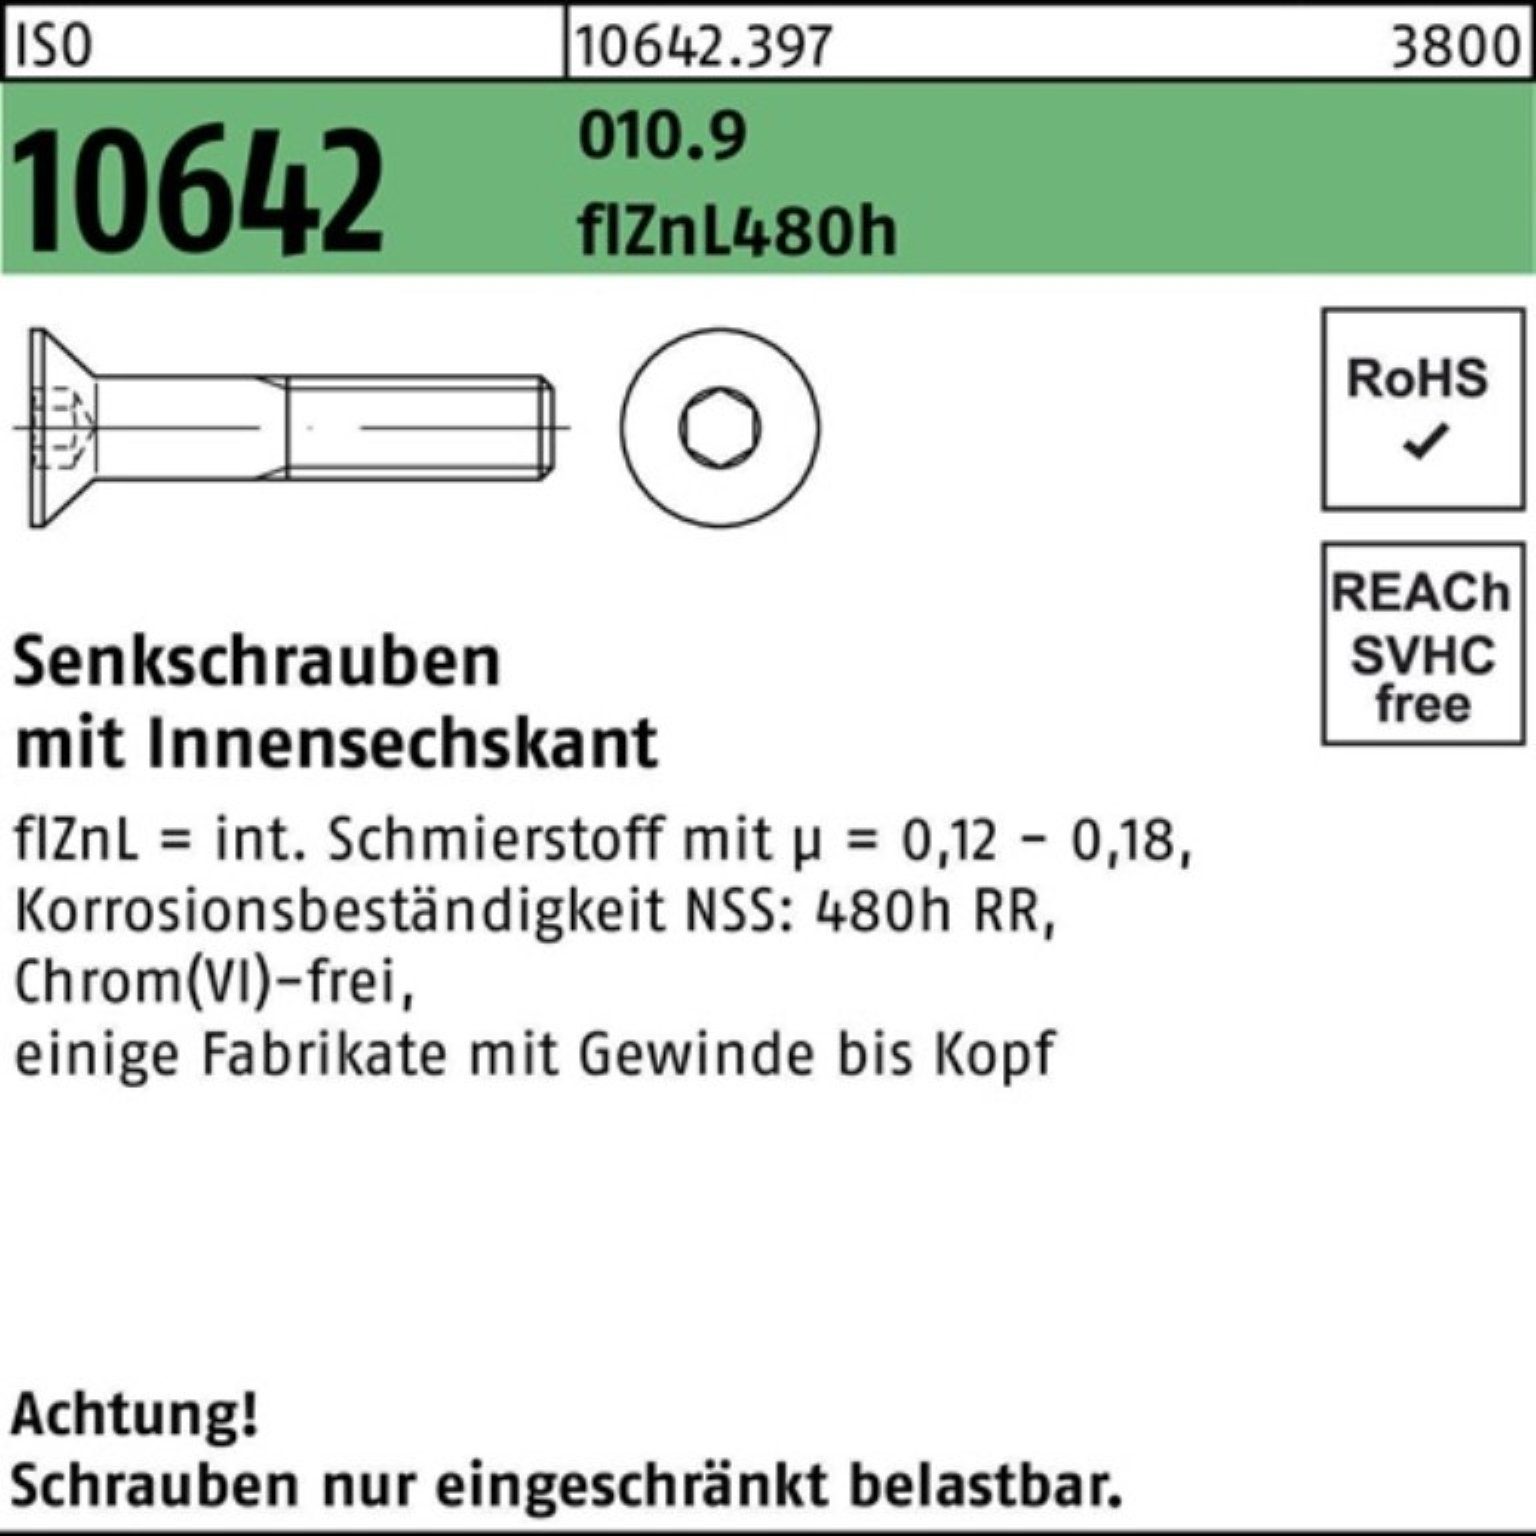 Reyher Senkschraube 100er Pack Innen-6kt flZnL M16x30 ISO 010.9 10642 zi Senkschraube 480h